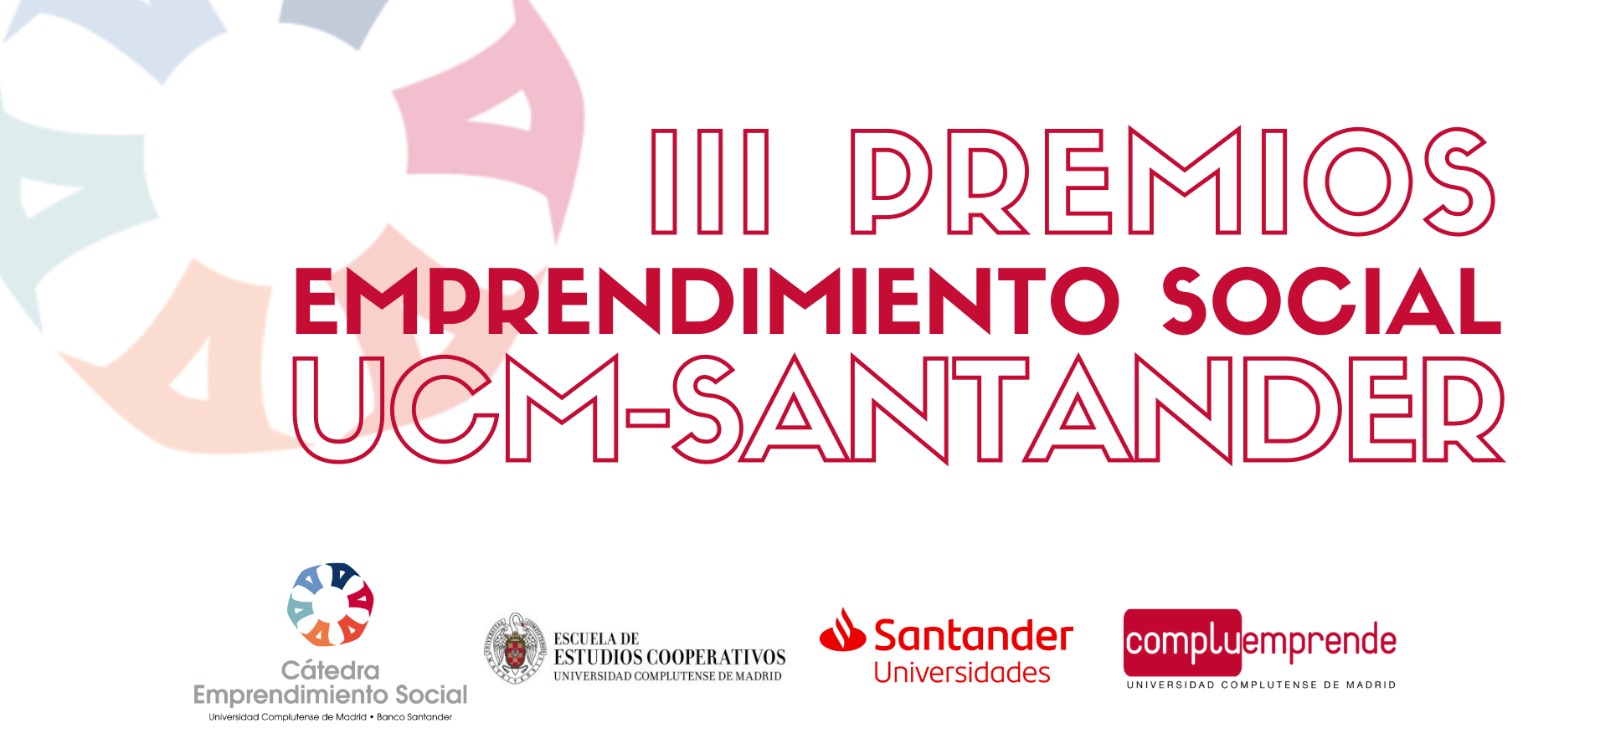 Conoce los Ganadores de la III Edición de los Premios de Emprendimiento Social UCM-Santander